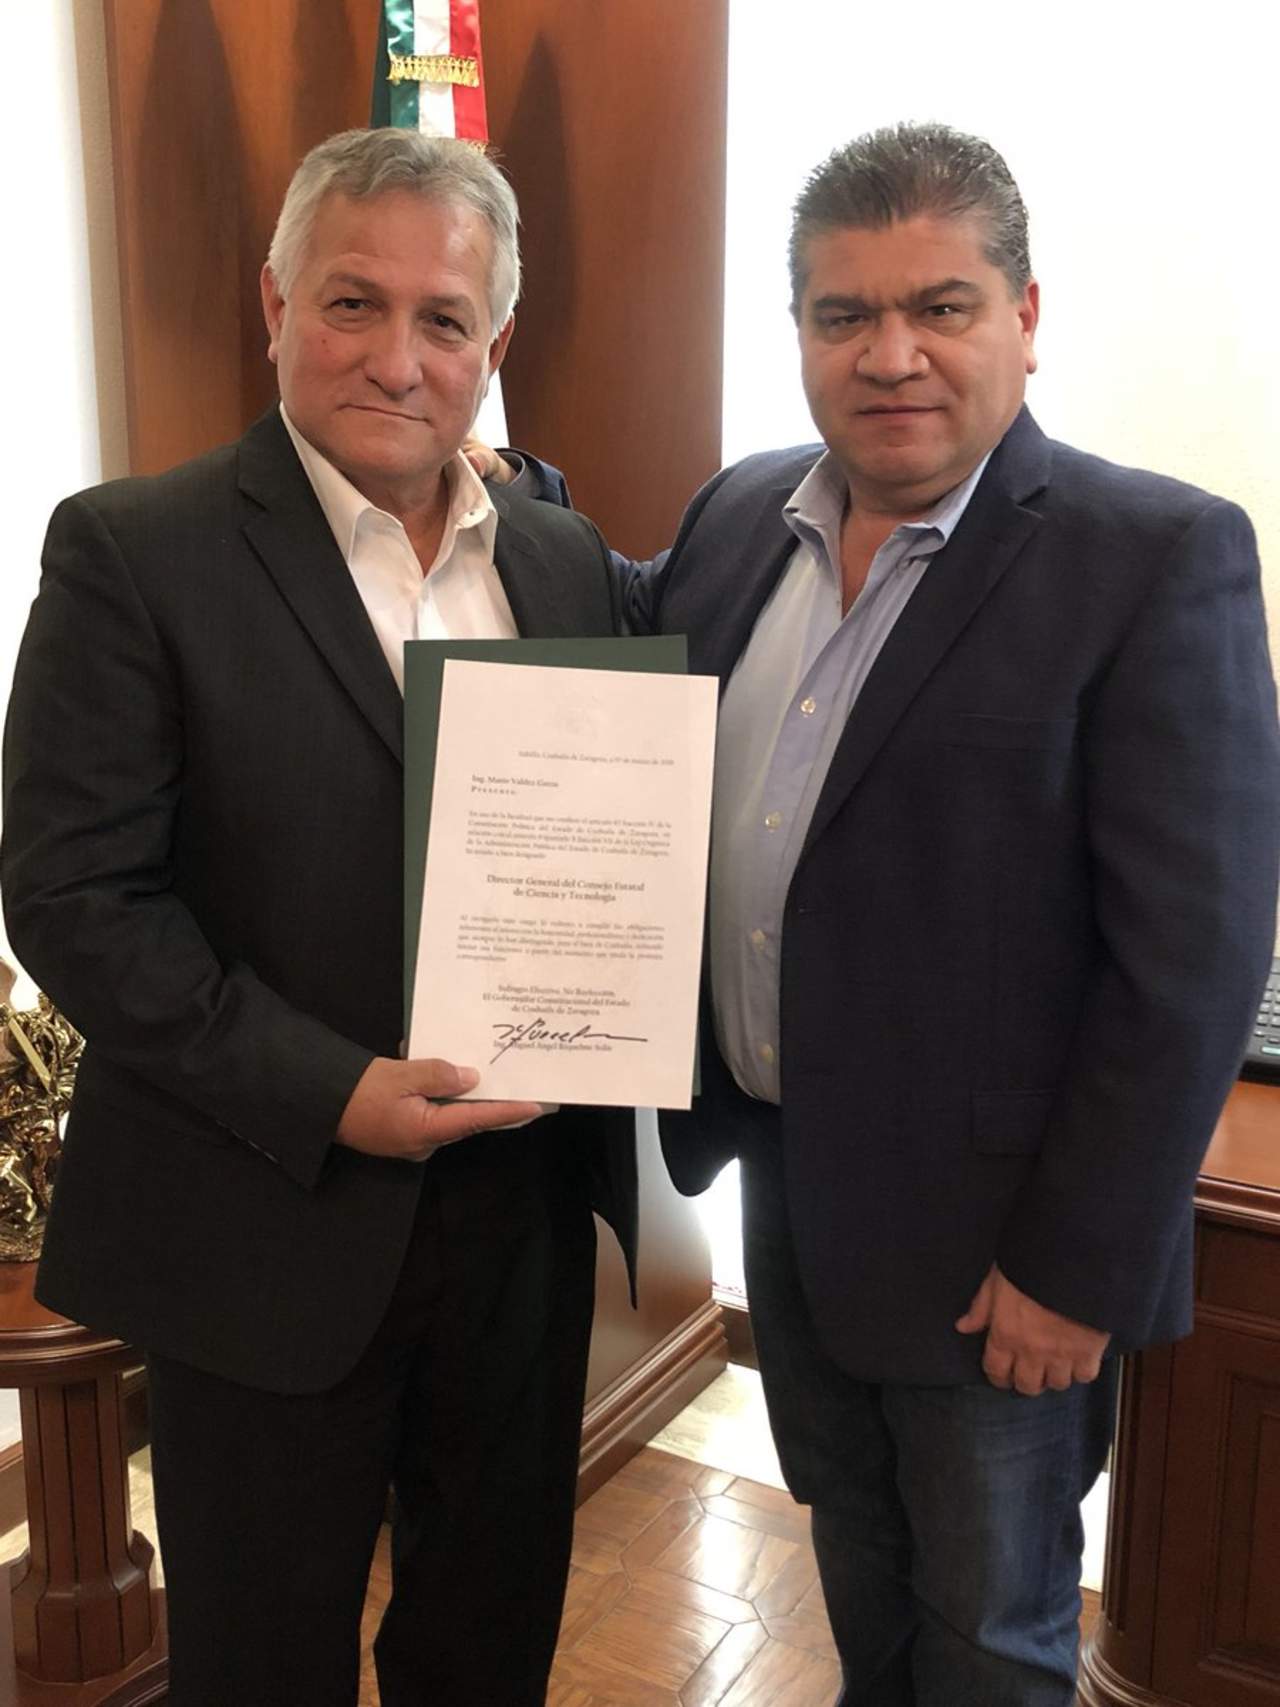 Anteriormente Valdés Garza fungió como quinto regidor durante la administración municipal de Torreón en la gestión de Riquelme Solís como alcalde, y formó parte de la comisión de Educación, Arte y Cultura. (TWITTER)